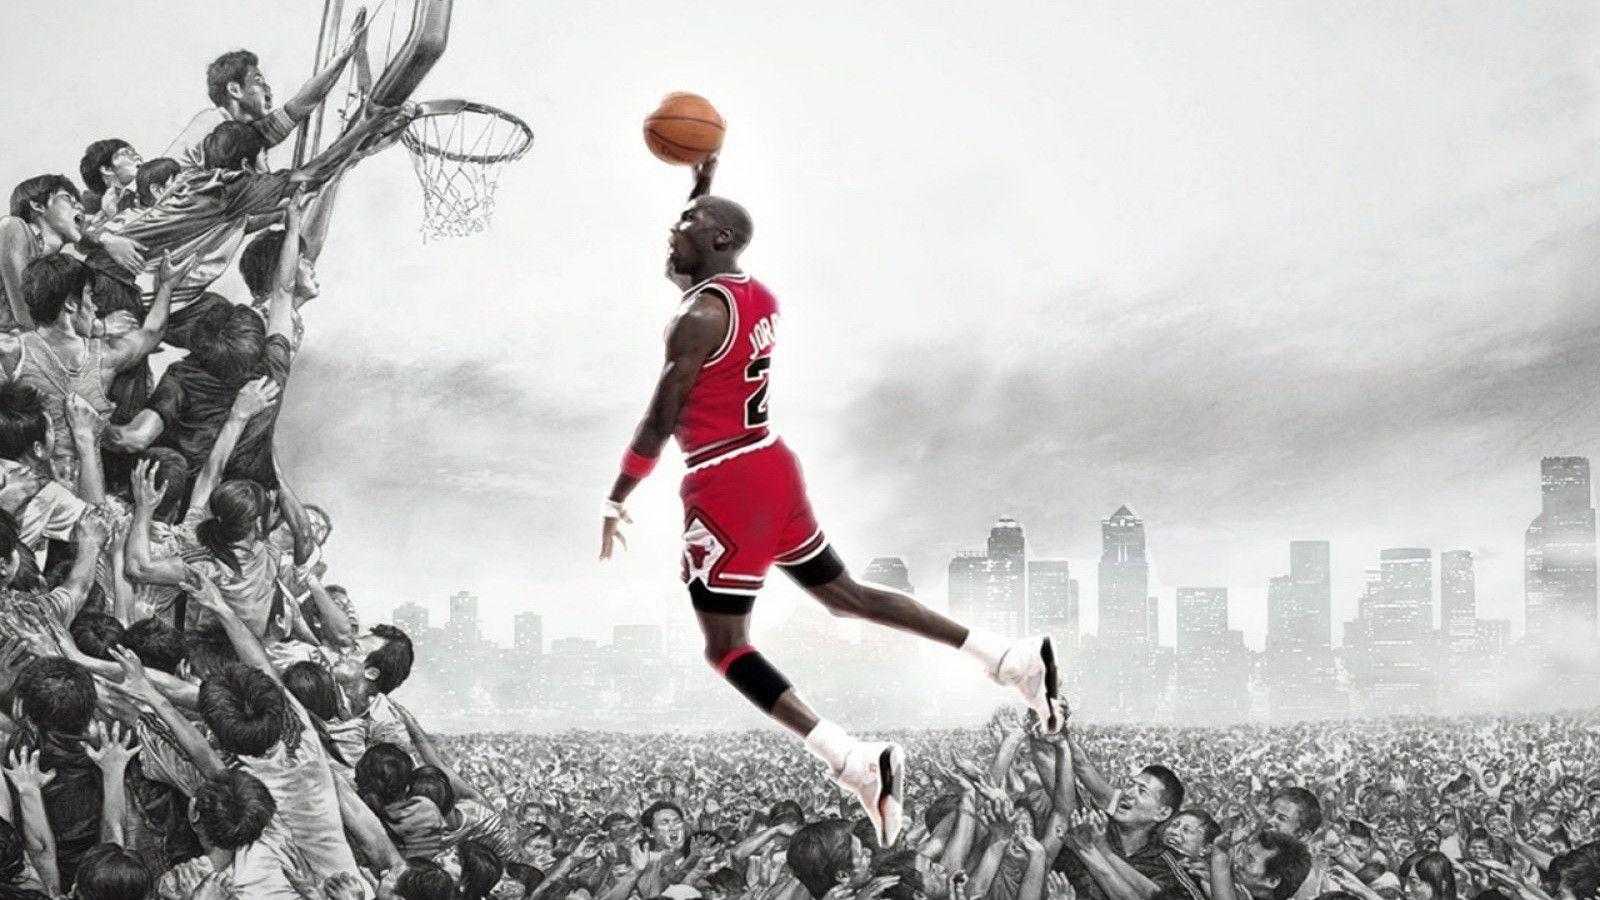 Desktop Michael Jordan Wallpaper 1